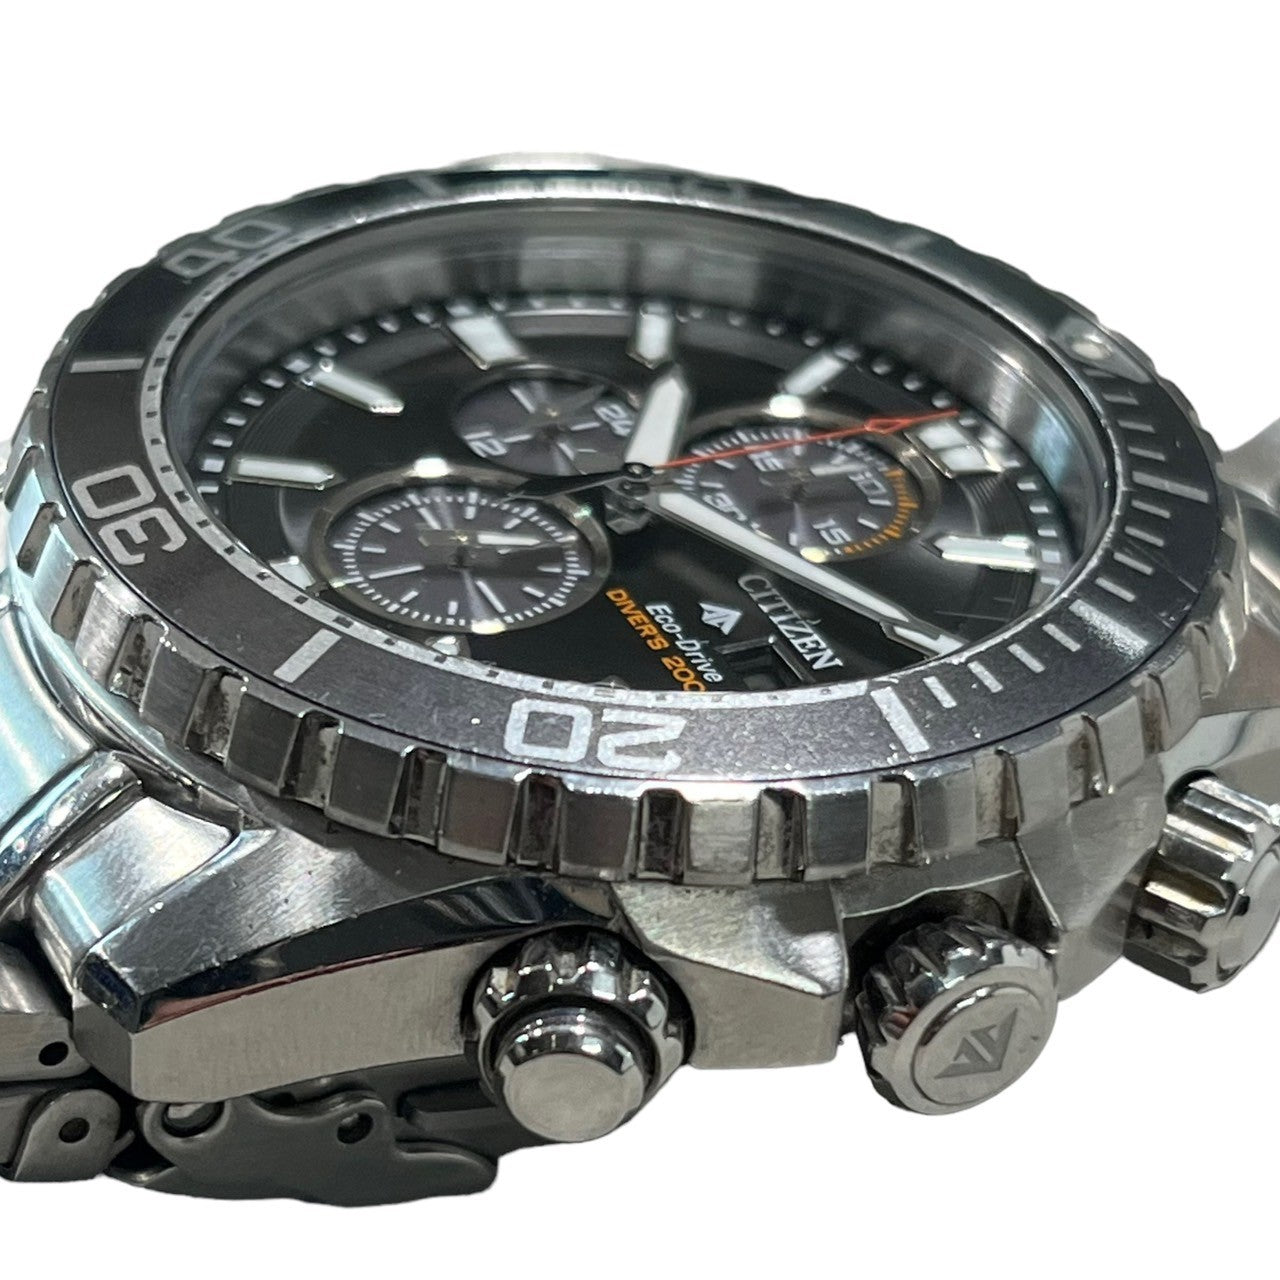 CITIZEN(シチズン) プロマスター PROMAST Eco-Drive 腕時計 B612-S115922 ブラック 腕時計 アナログ クオーツ クロノグラフ ダイバーズ ウォッチ エコドライブ